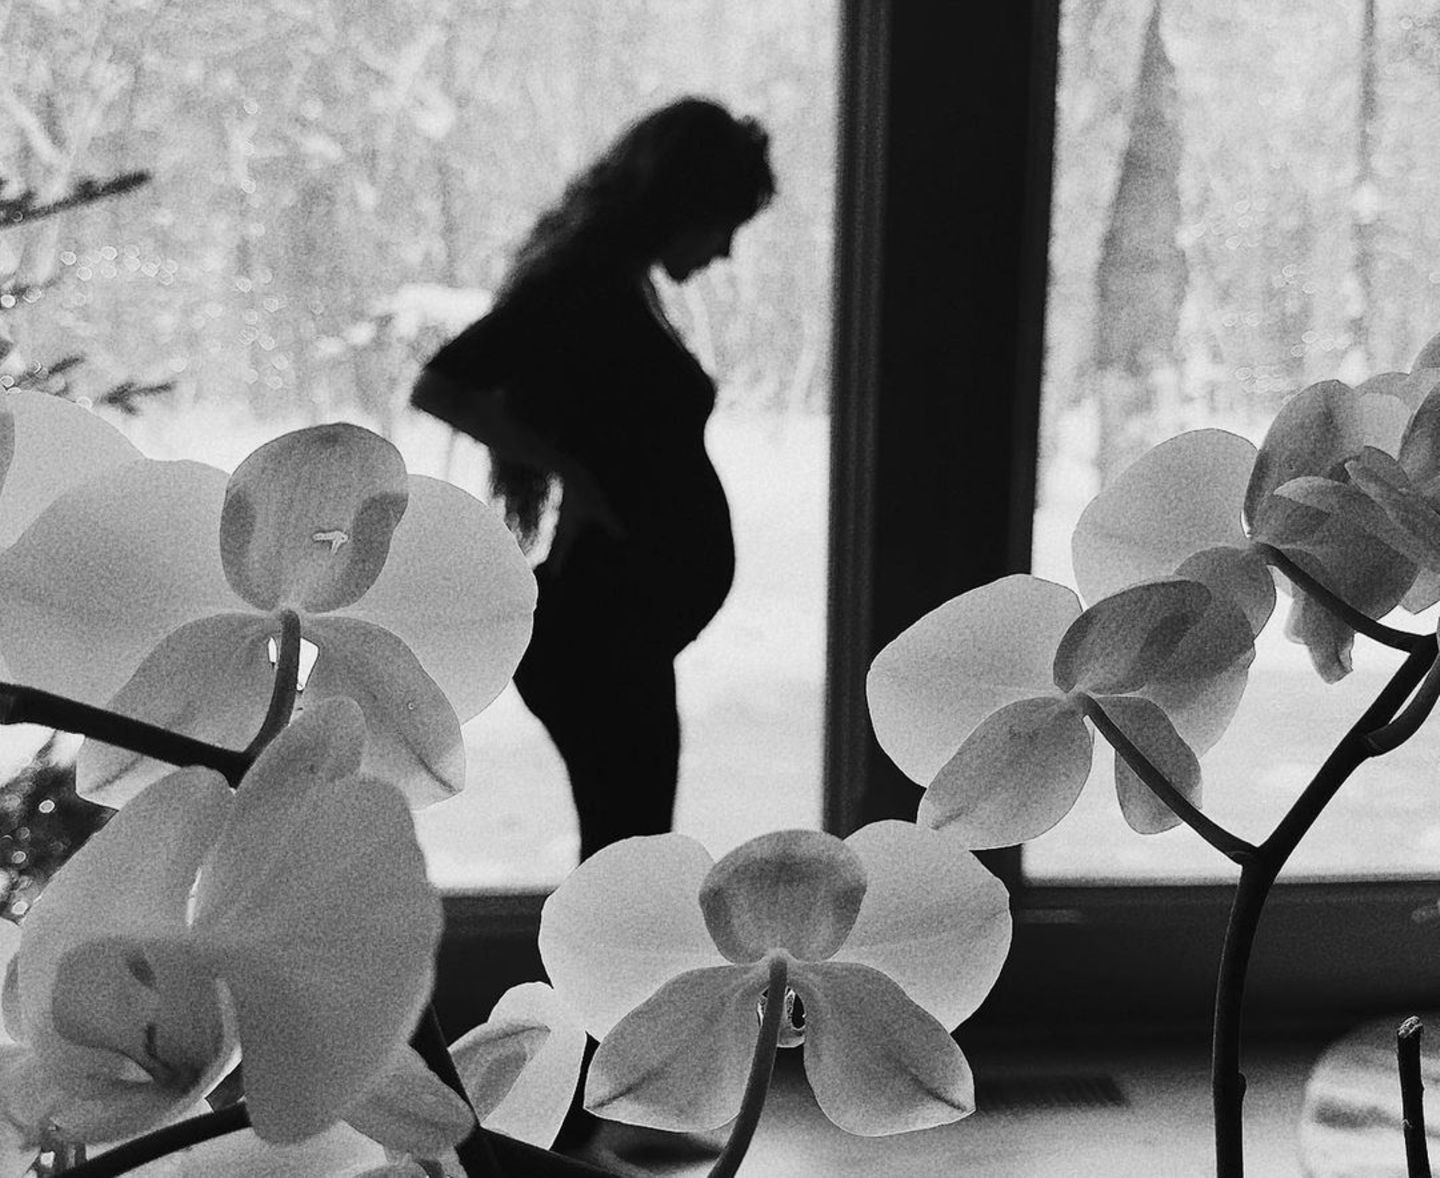 Es ist Rumer Willis, die Tochter der Hollywoodstars Demi Moore und Bruce Willis, die ihre Schwangerschaft am 21. Dezember mit diesem Schwarz-Weiß-Foto auf Instagram verkündet. Die 34-Jährige steht im Profil, ihre langen Haare fallen ihr über den Rücken. Die Babykugel ist nicht zu übersehen! 